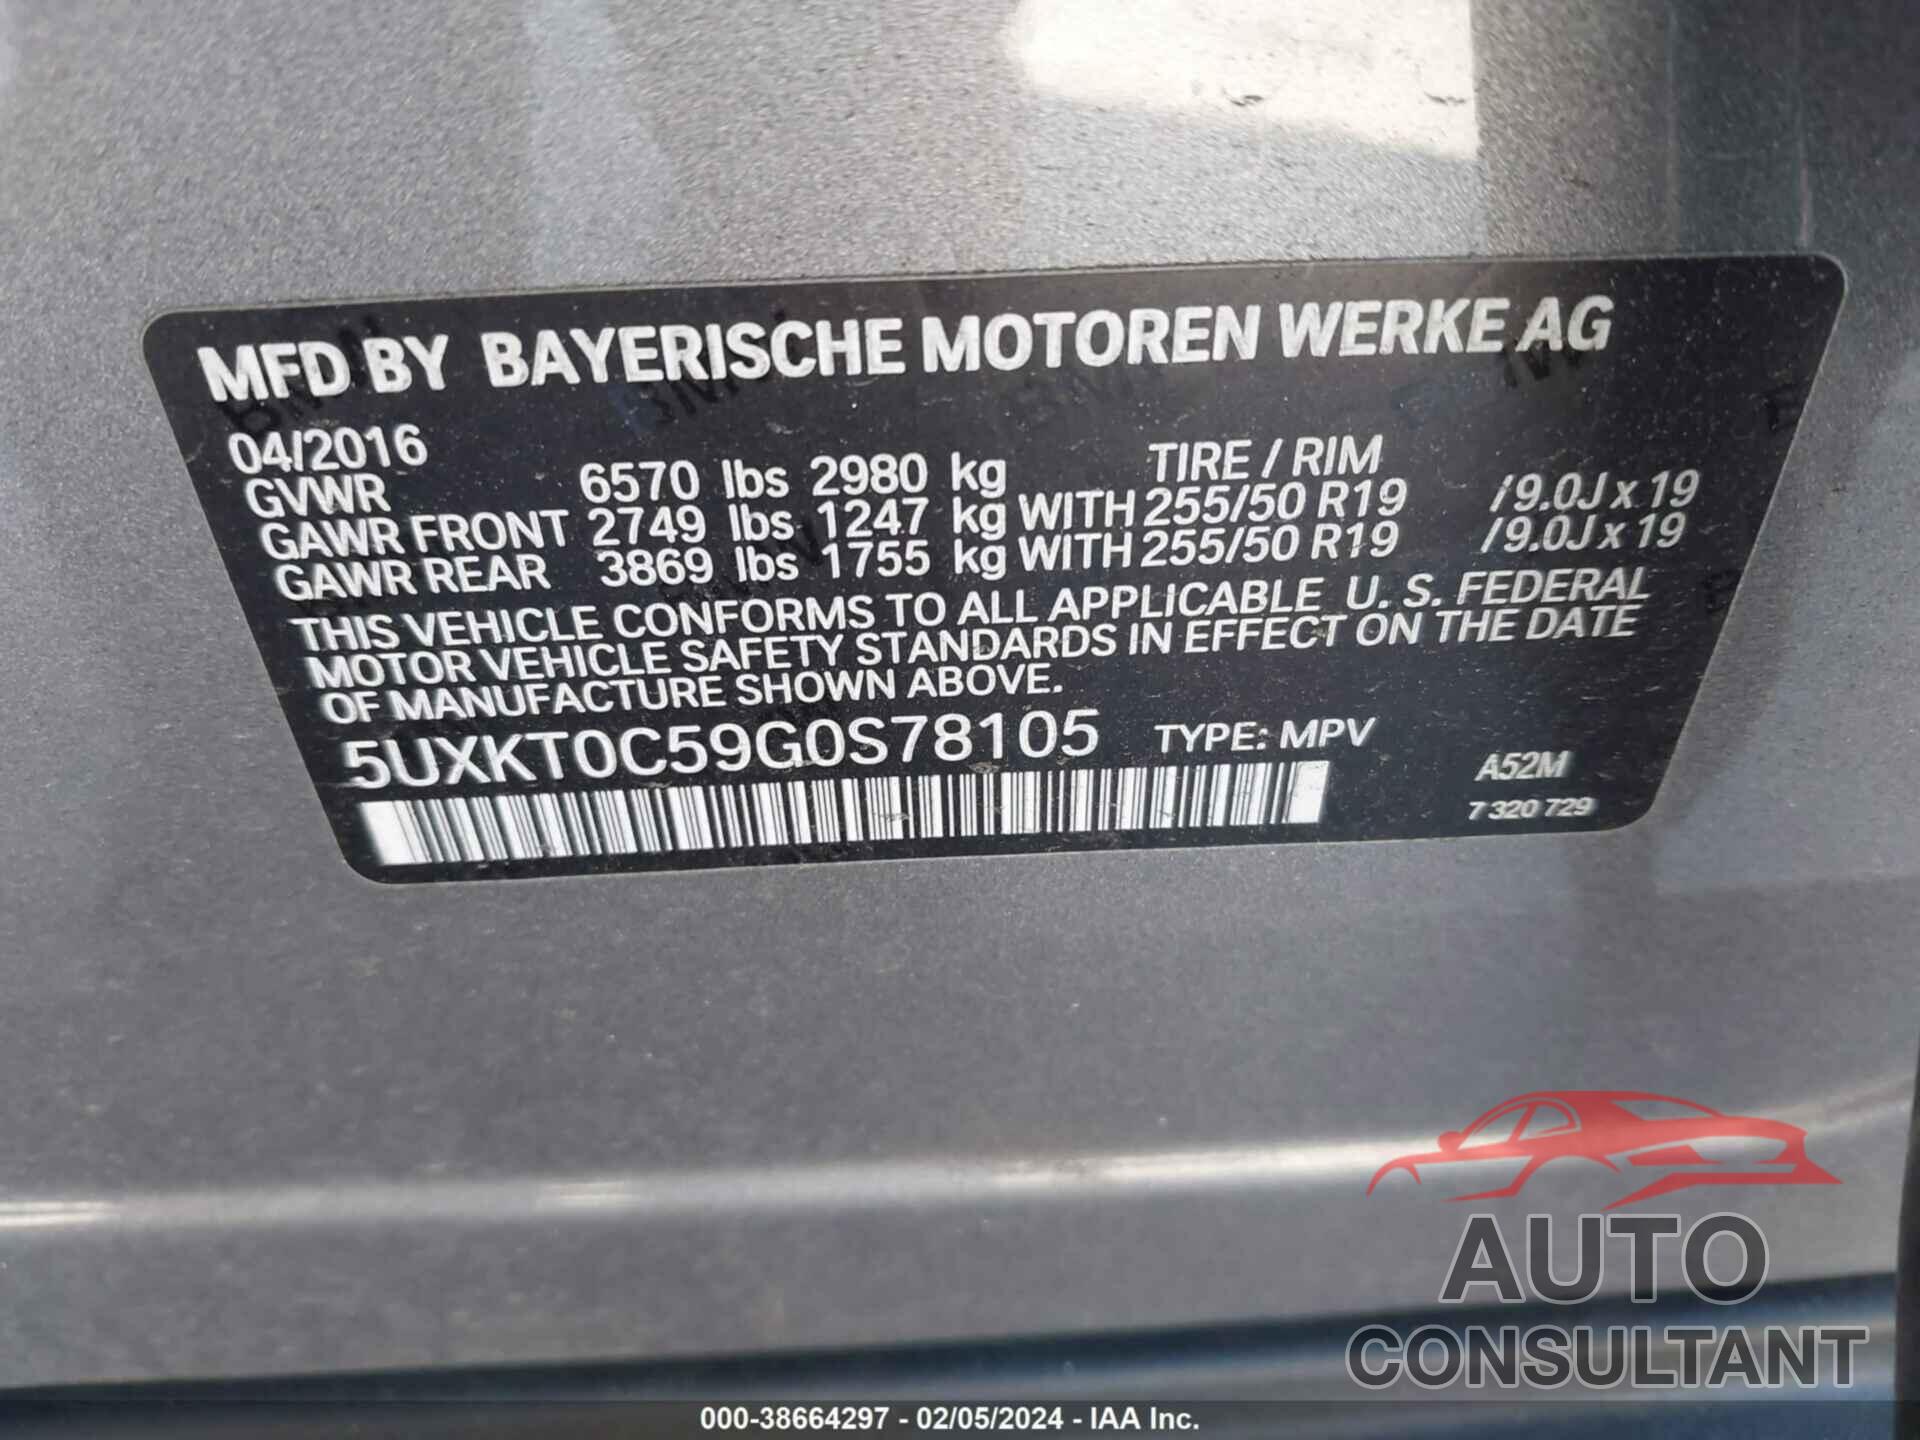 BMW X5 EDRIVE 2016 - 5UXKT0C59G0S78105